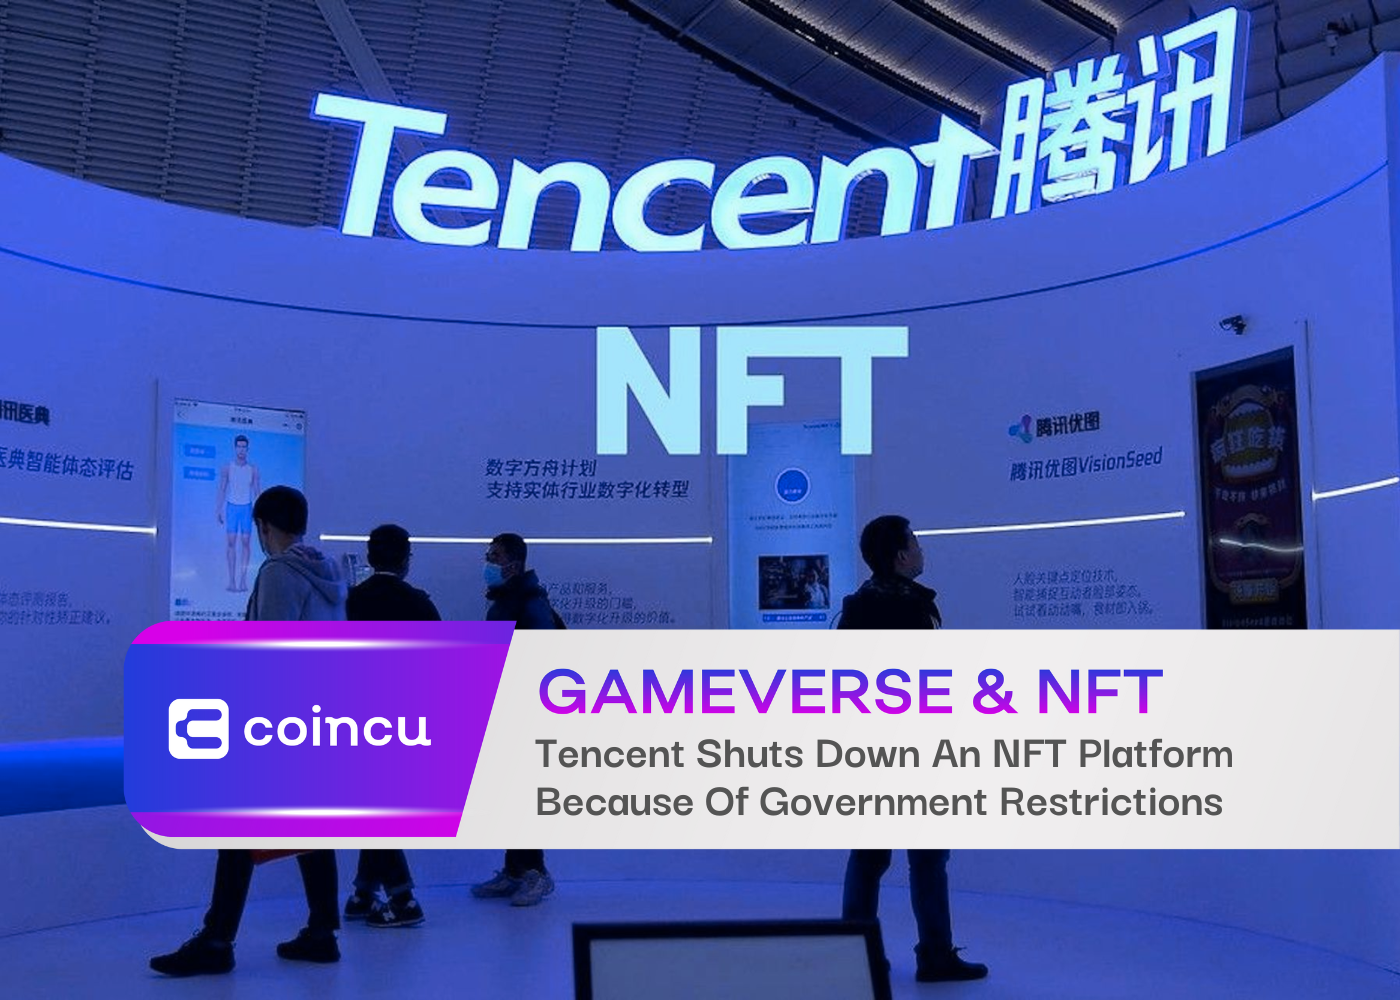 सरकारी प्रतिबंधों के कारण Tencent ने एक NFT प्लेटफ़ॉर्म बंद कर दिया